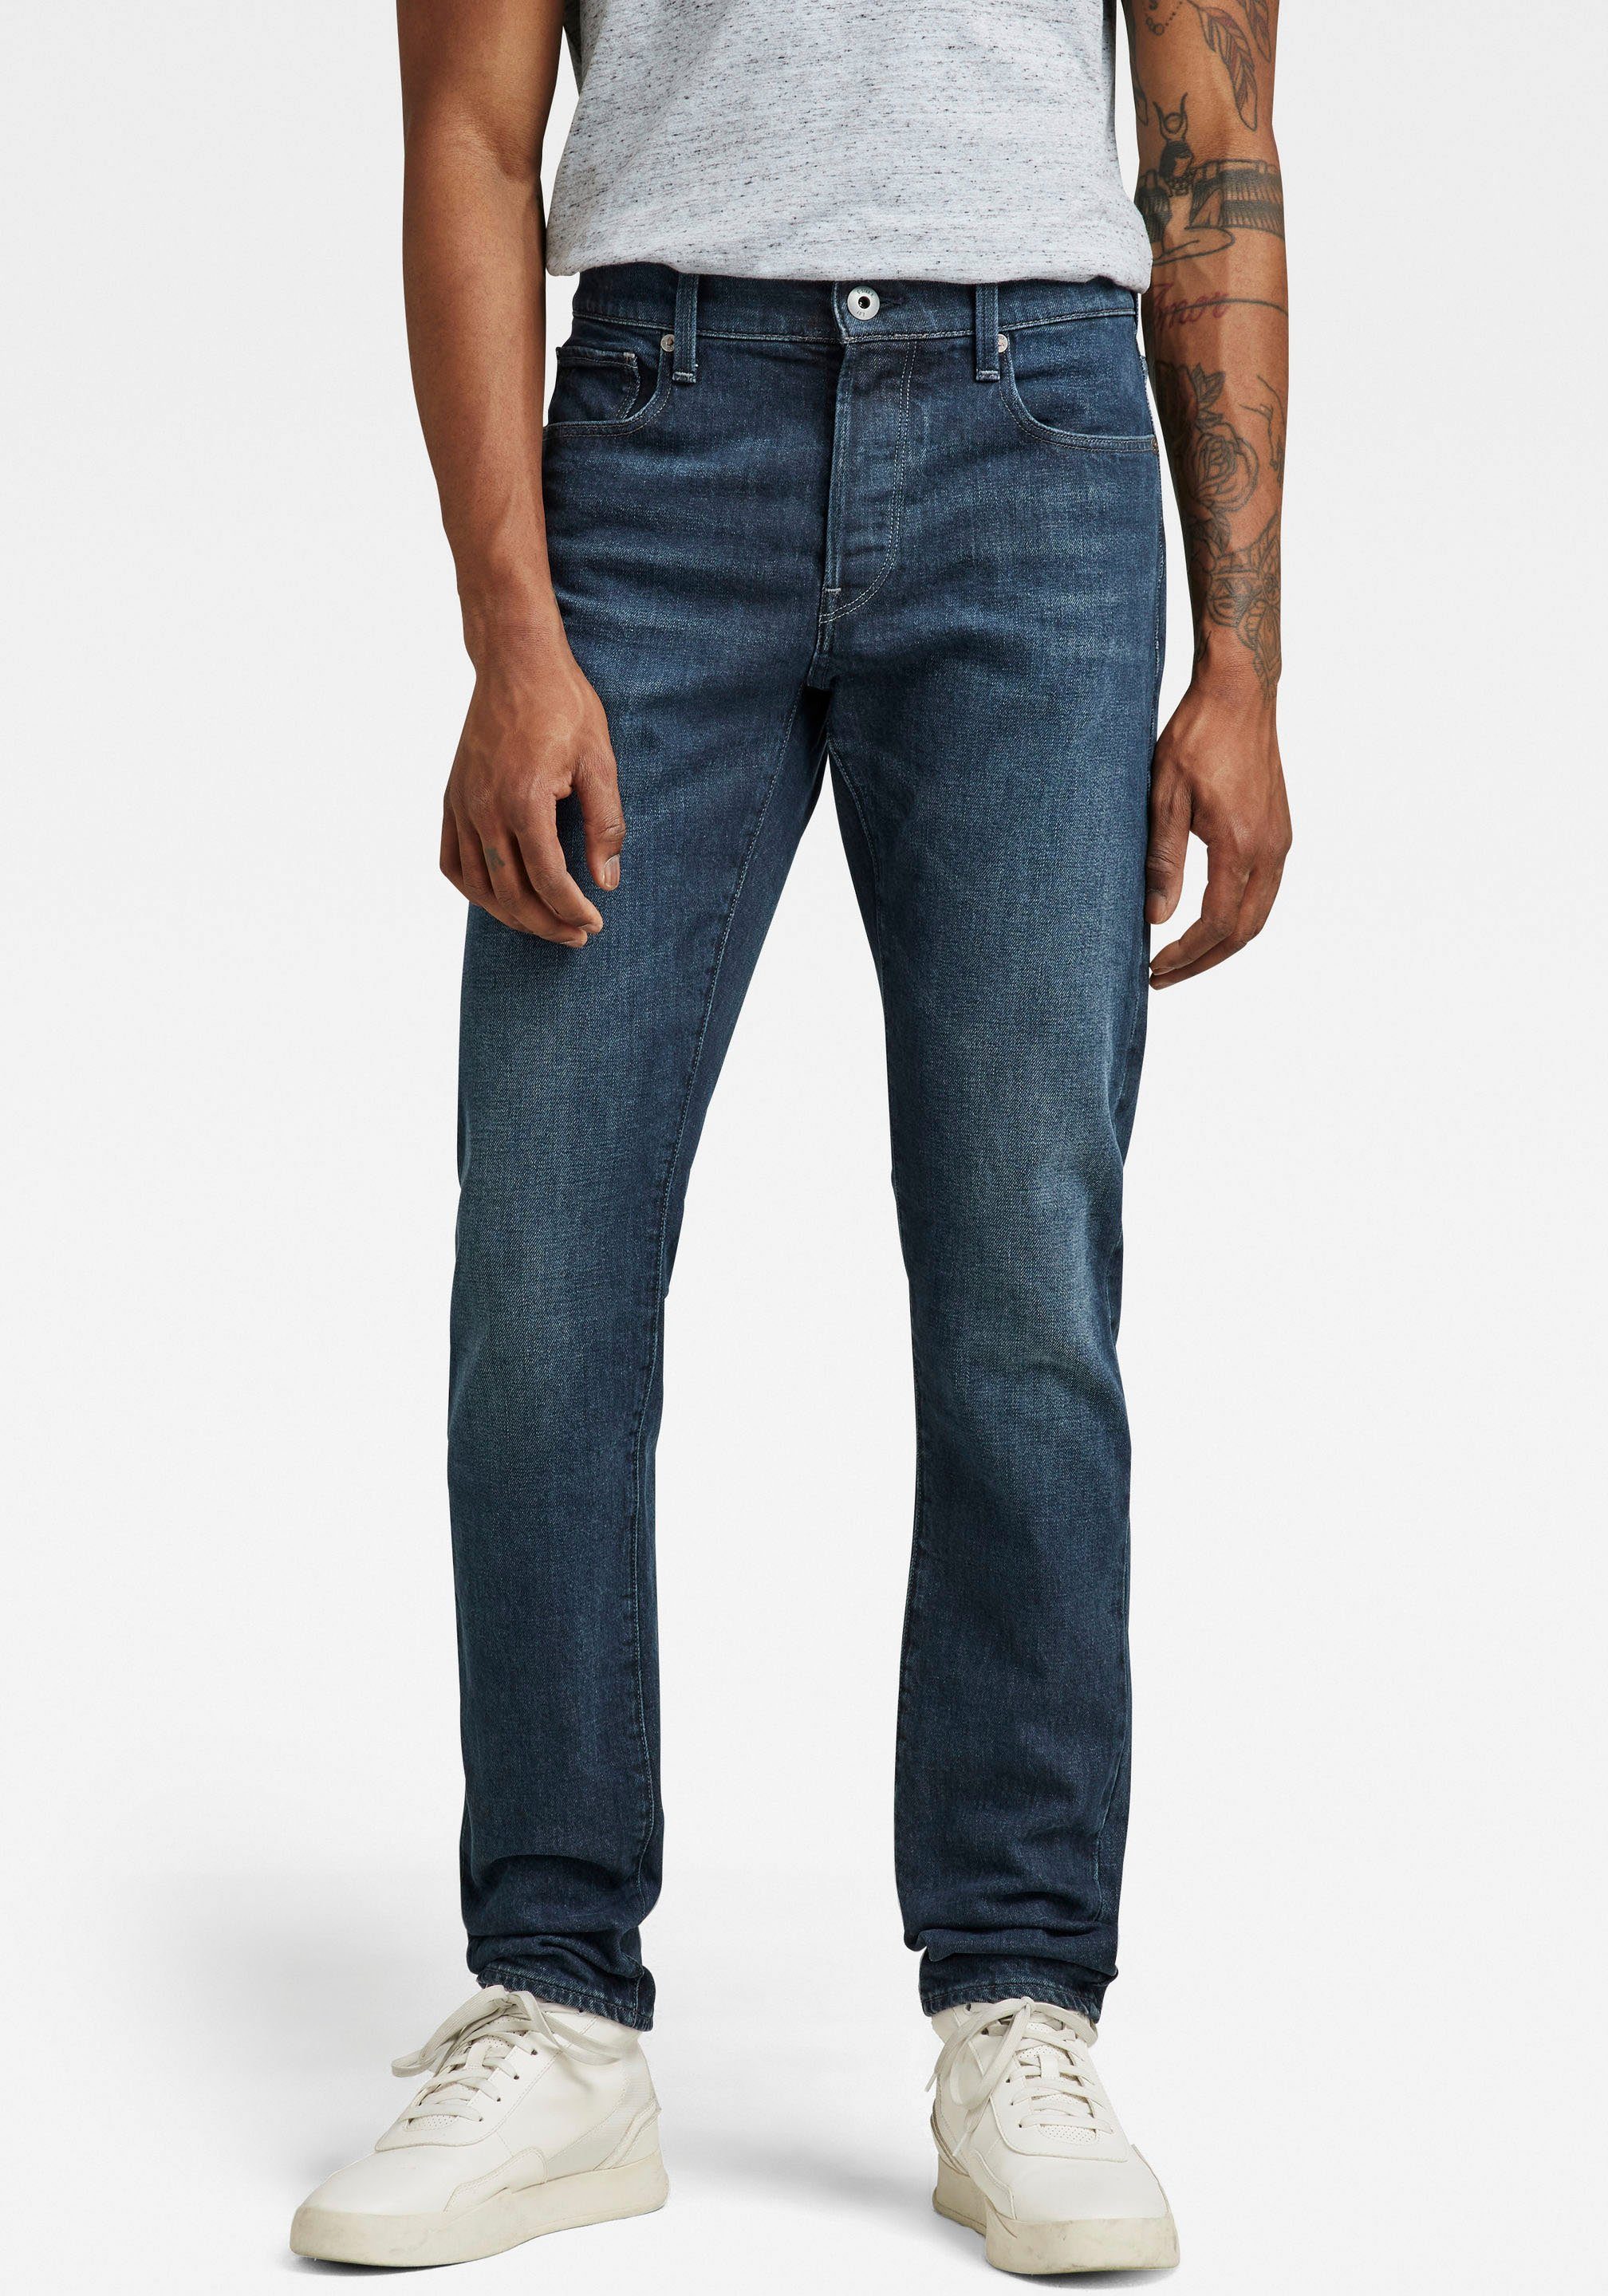 Weniger als die Hälfte des Preises! Kostenloser Versand G-Star RAW Slim-fit-Jeans 3301 Slim worn in deep teal